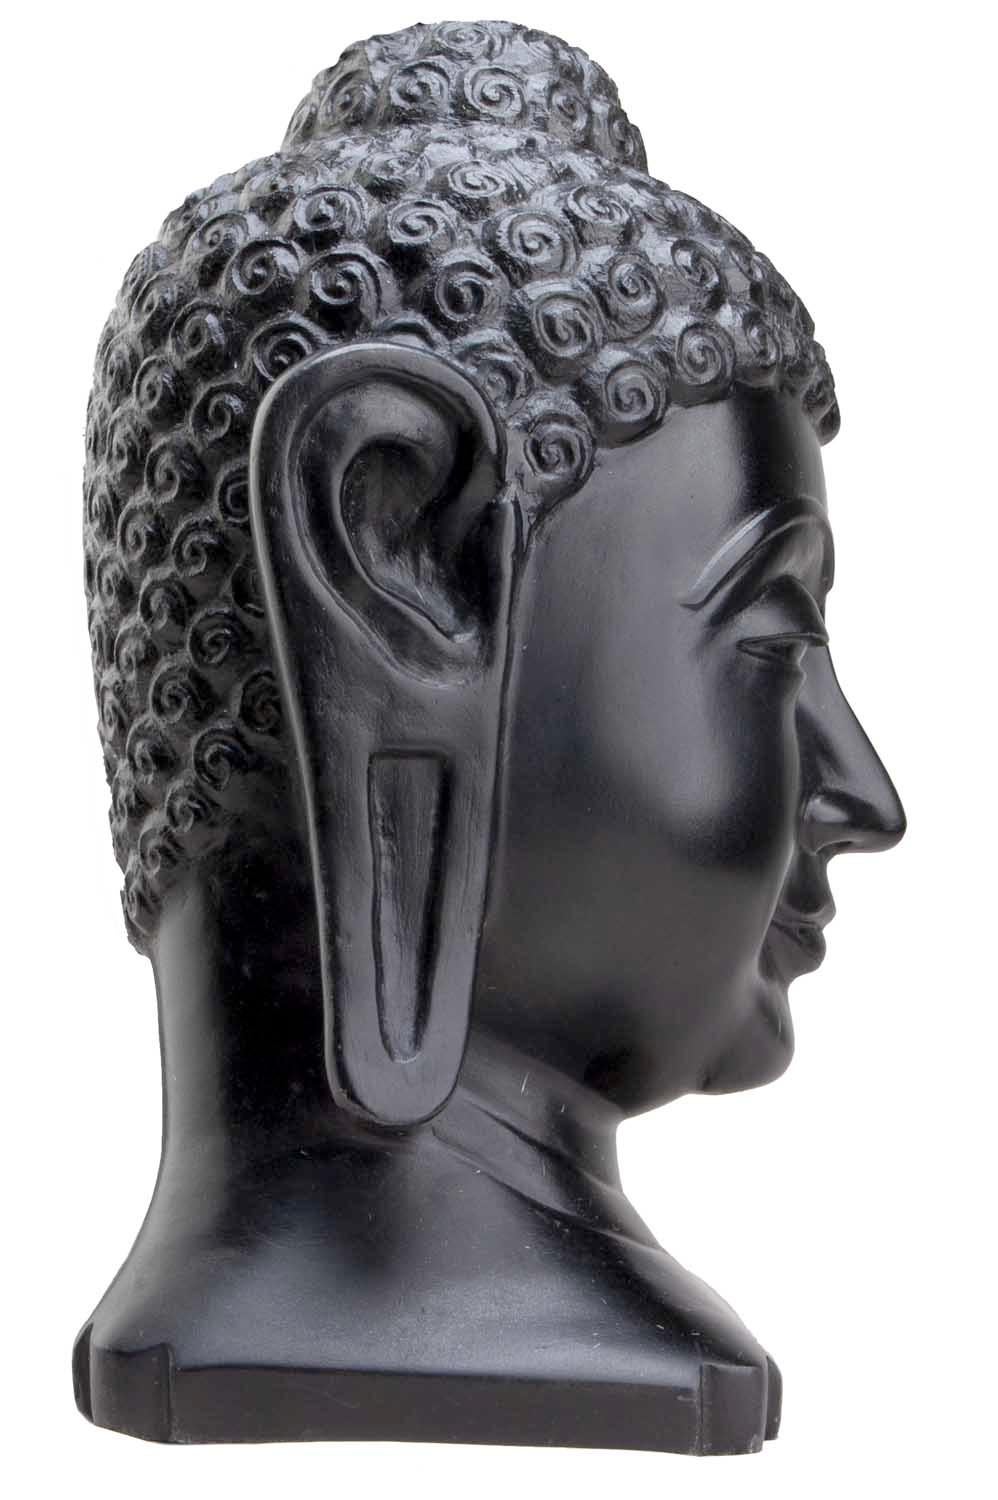 Cette tête de bouddha lumineuse a été sculptée à la main par les arrière-petits-fils des créateurs du Taj Mahal.
Le marbre Makrana est le marbre le plus dense de la planète. Il est uniformément taché et hautement poli en noir avec des